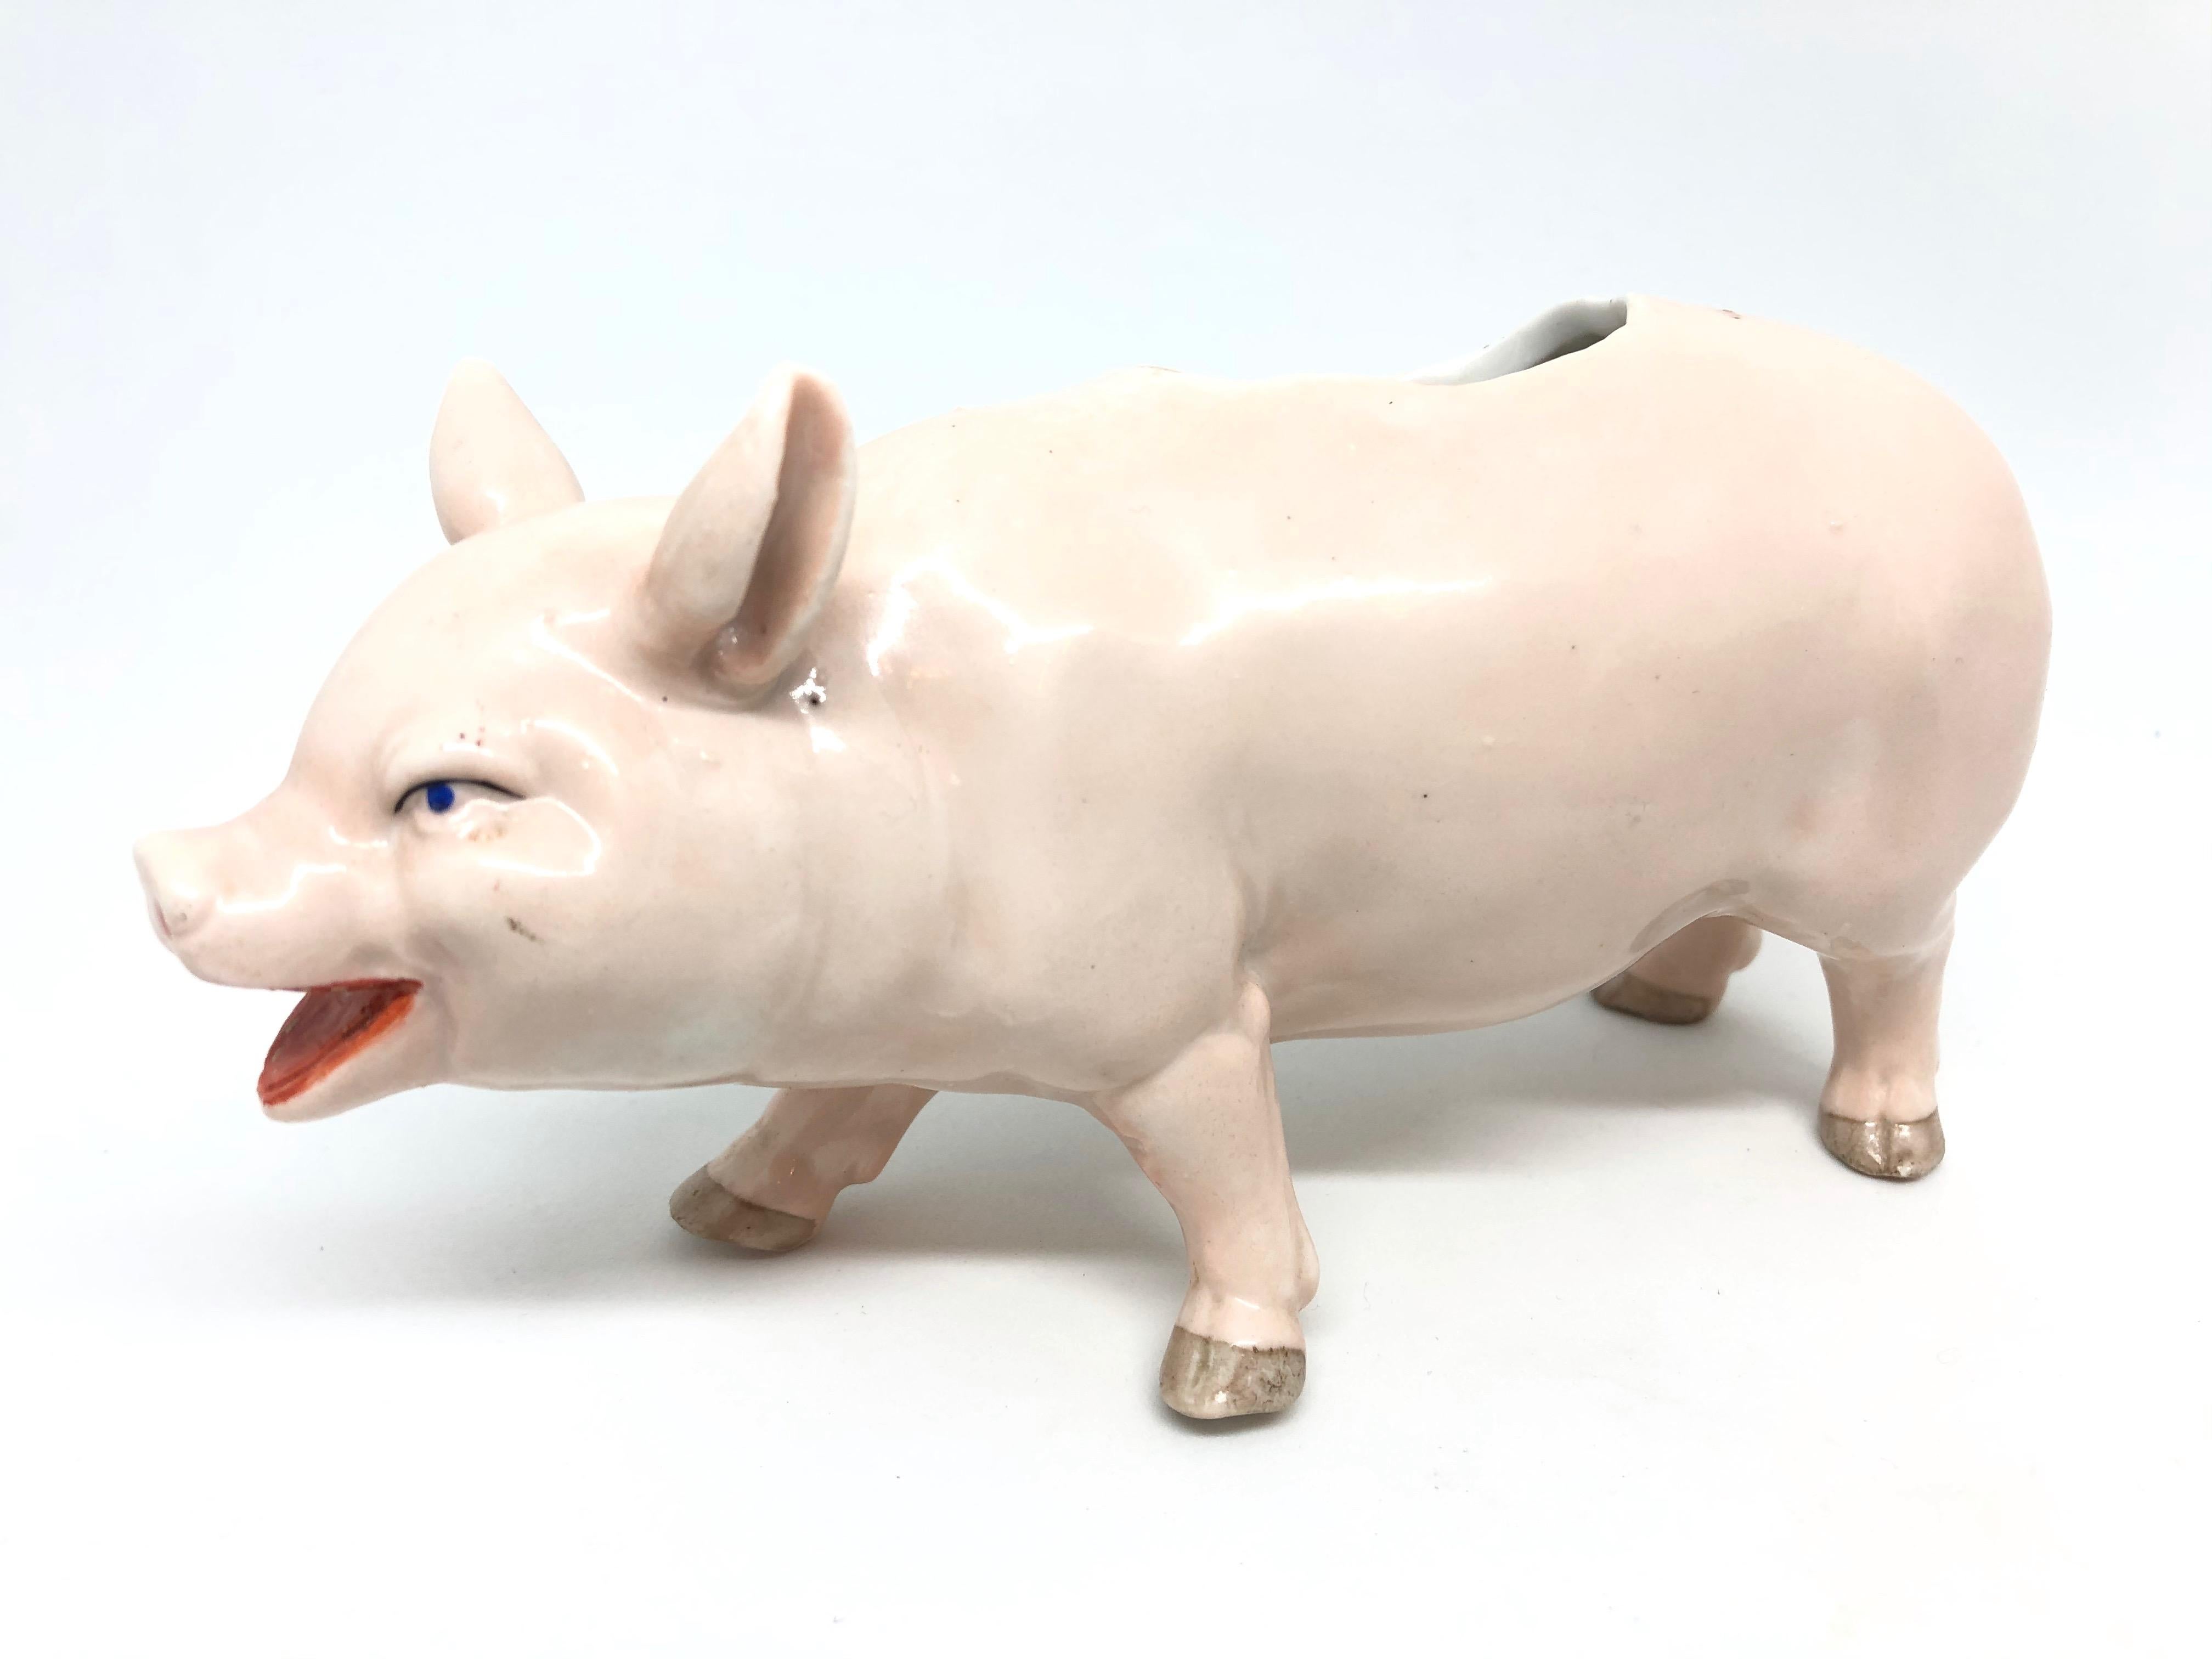 Magnifique fourre-tout figuratif en forme de cochon rose. Fabriqué en porcelaine. Une belle pièce d'art décorative pour toute pièce.